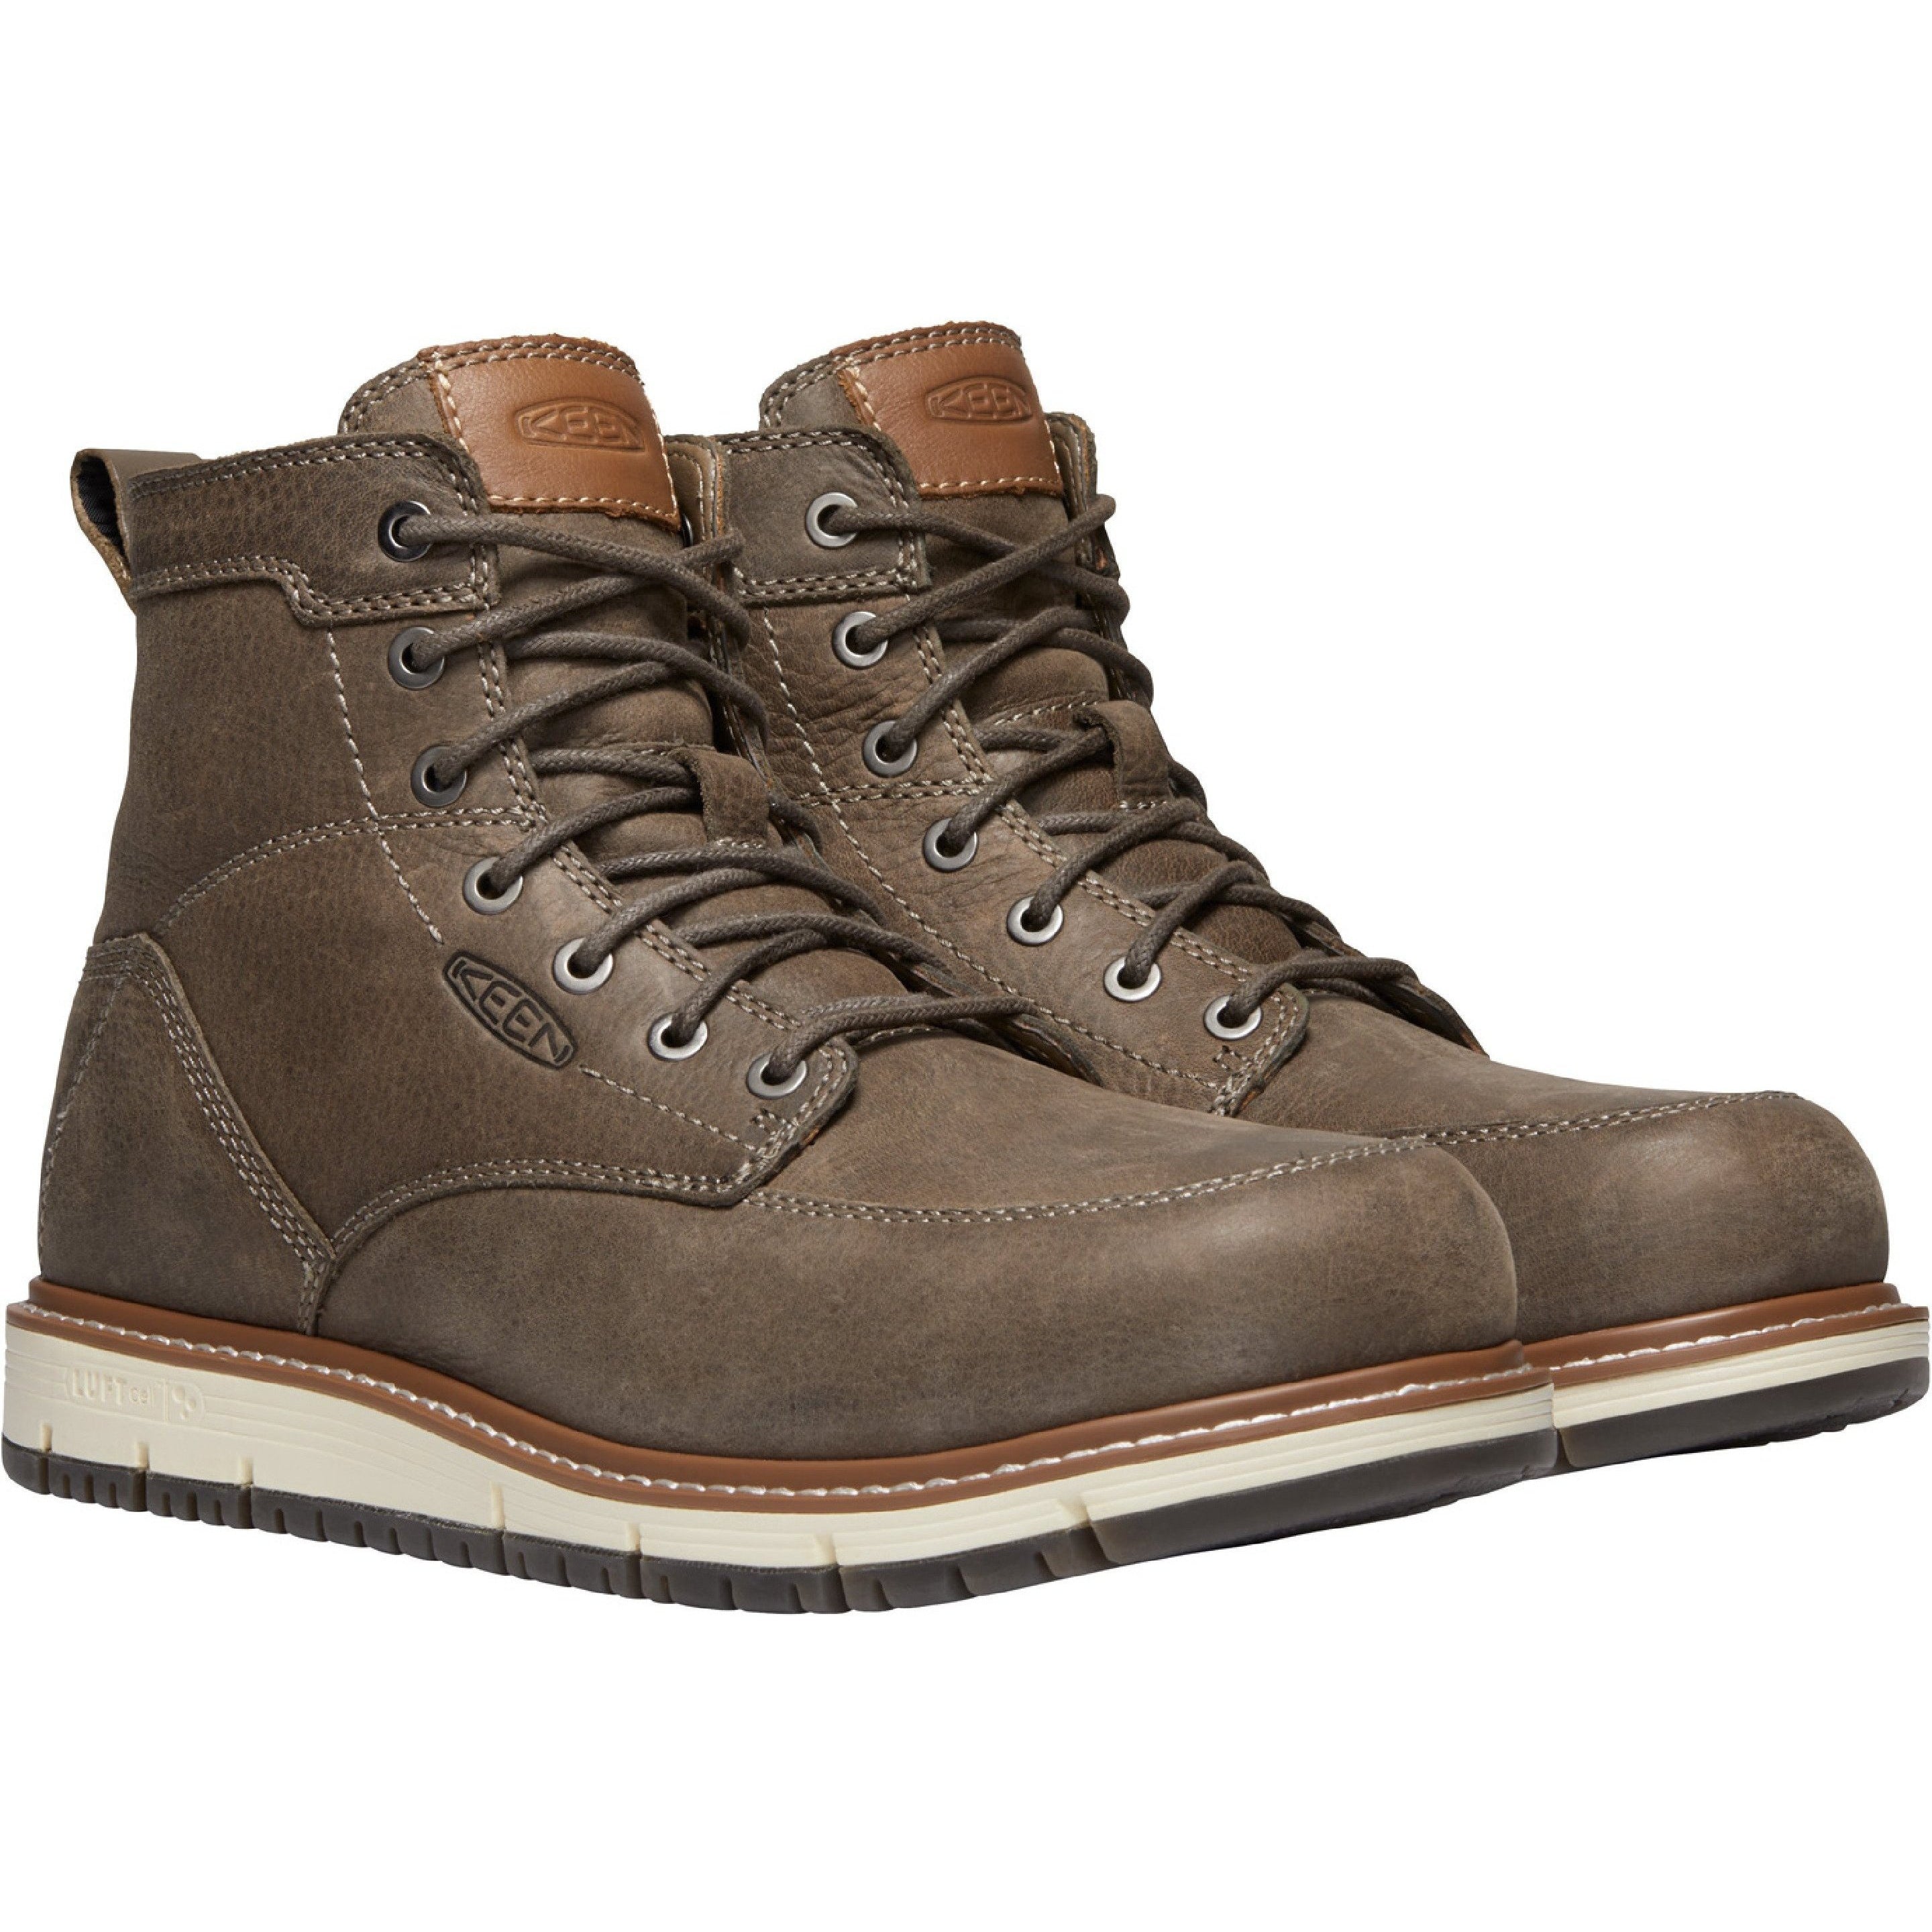 Keen Utility Men's San Jose 6" Aluminum Toe Work Boot Brown 1020057 8 / Medium / Brown - Overlook Boots